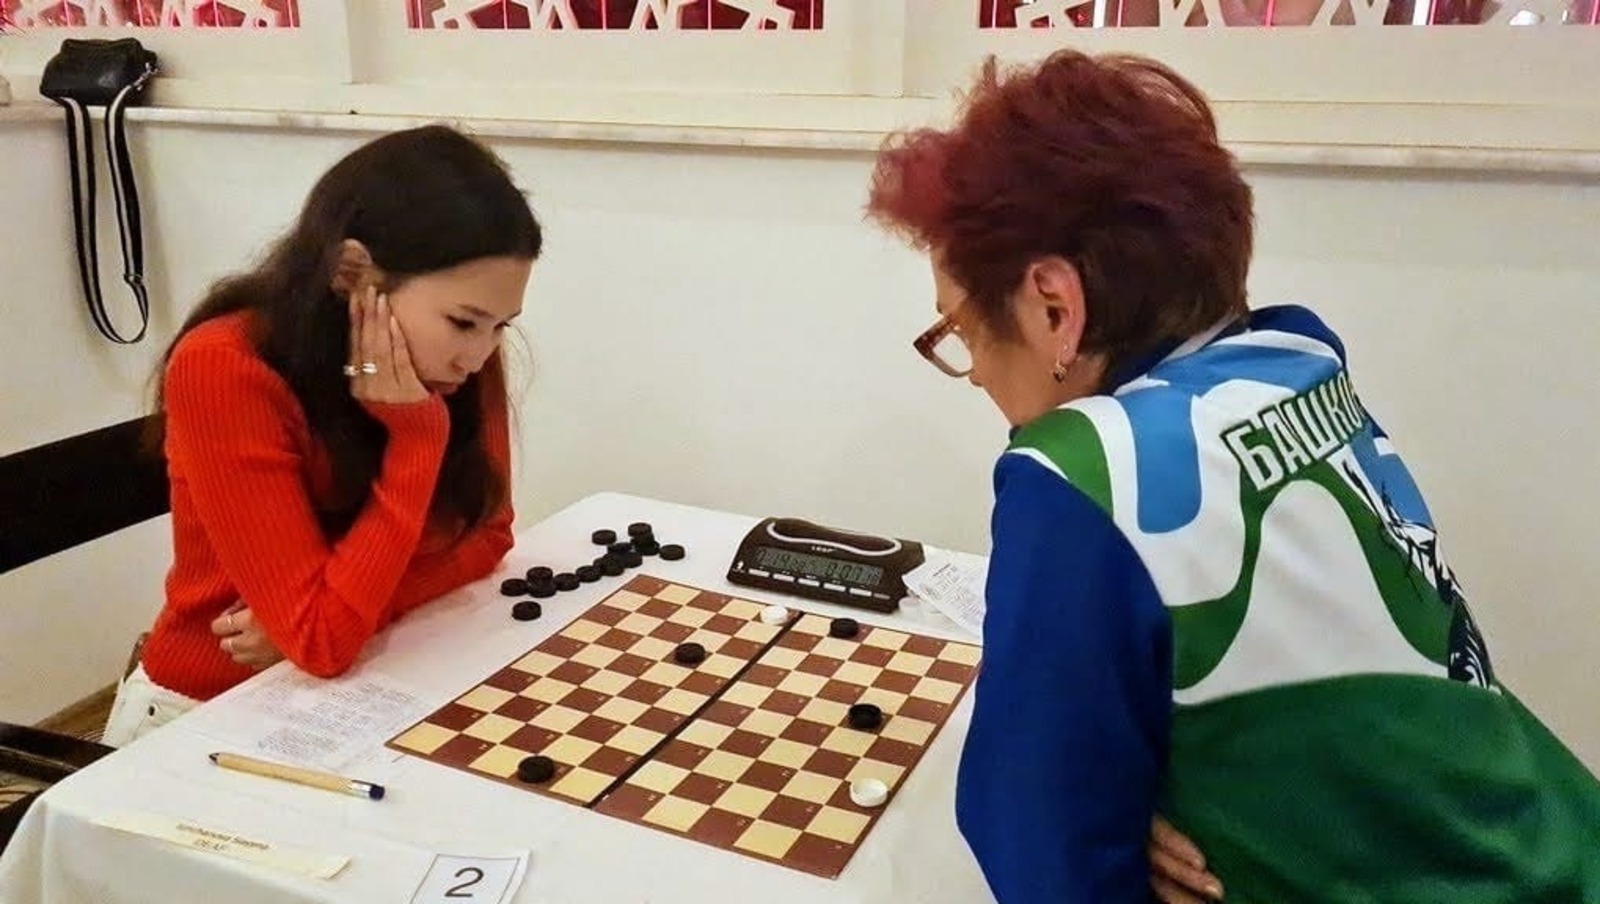 Ирина Марфина из Башкортостана стала чемпионкой Европы по стоклеточным шашкам